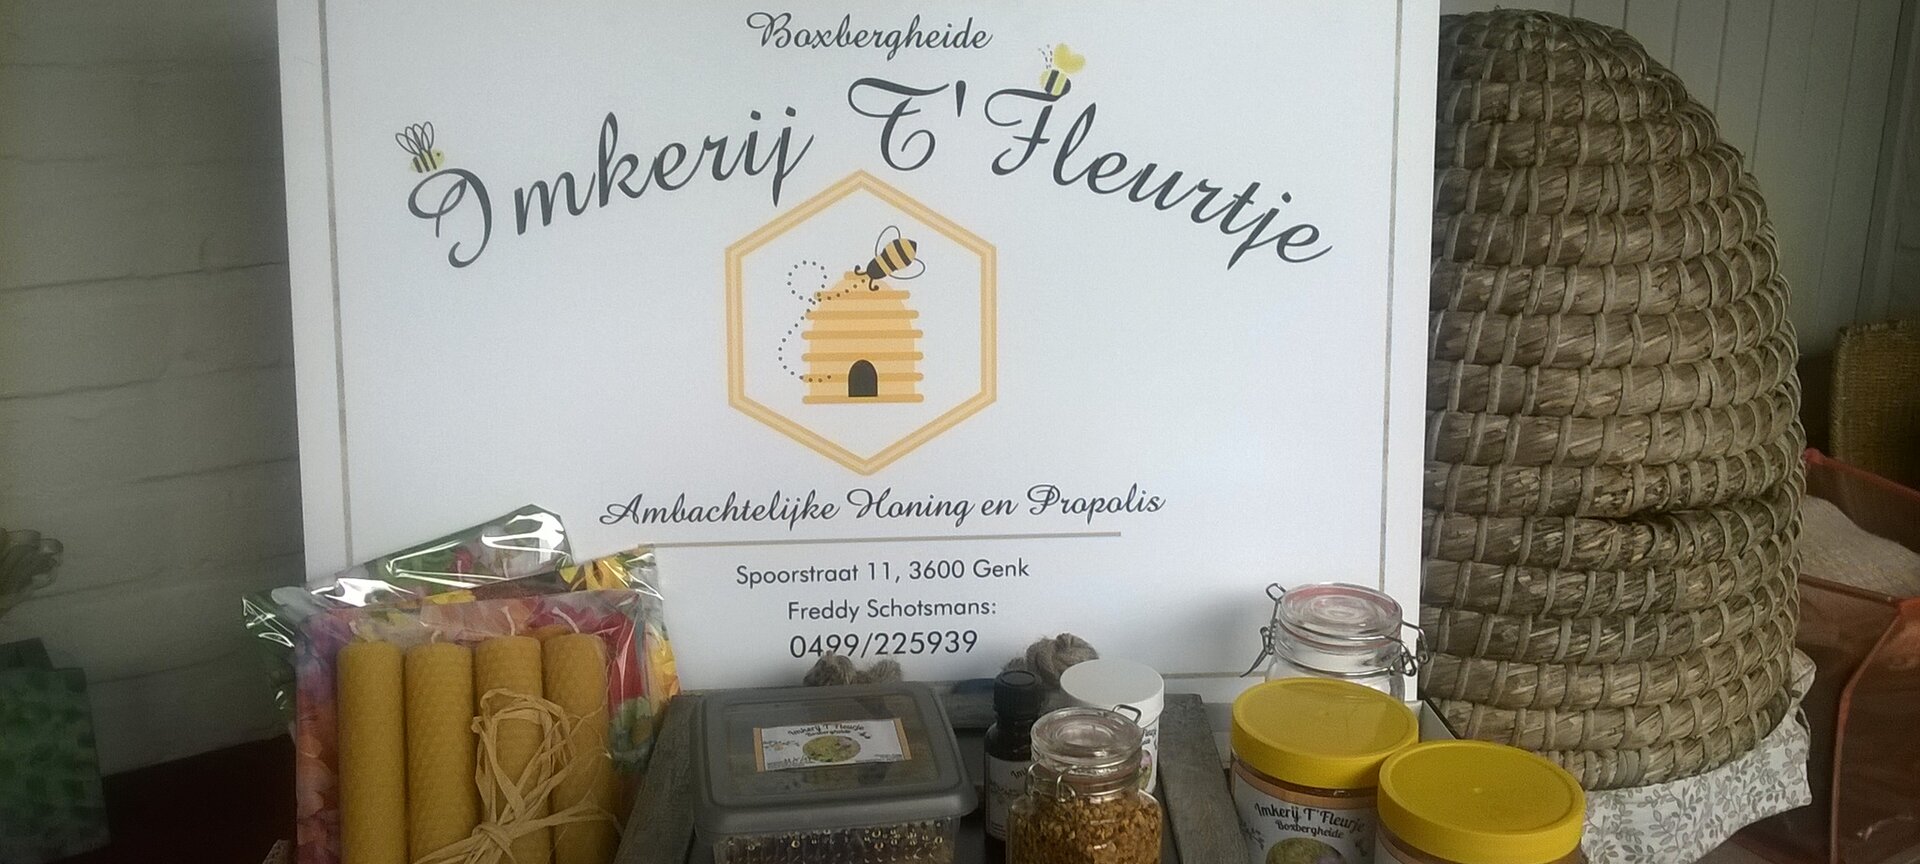 Imkerij 't Fleurtje Limburgse Honing soorten - logo